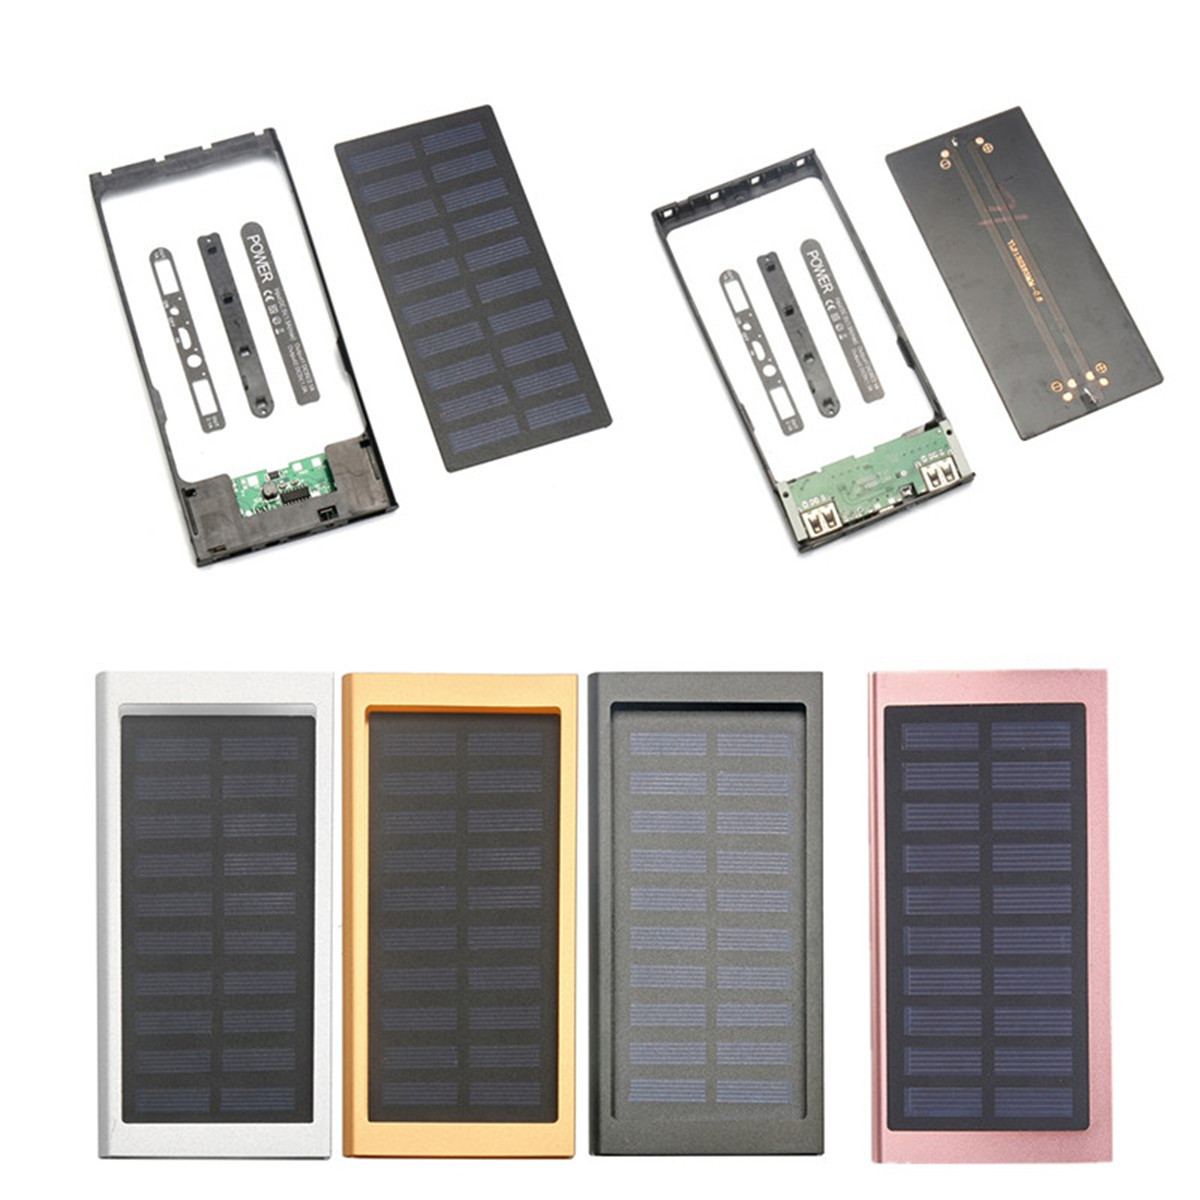 

10000mAh Портативный солнечный банк питания Двойной USB быстрозарядное устройство DIY Чехол для мобильного телефона